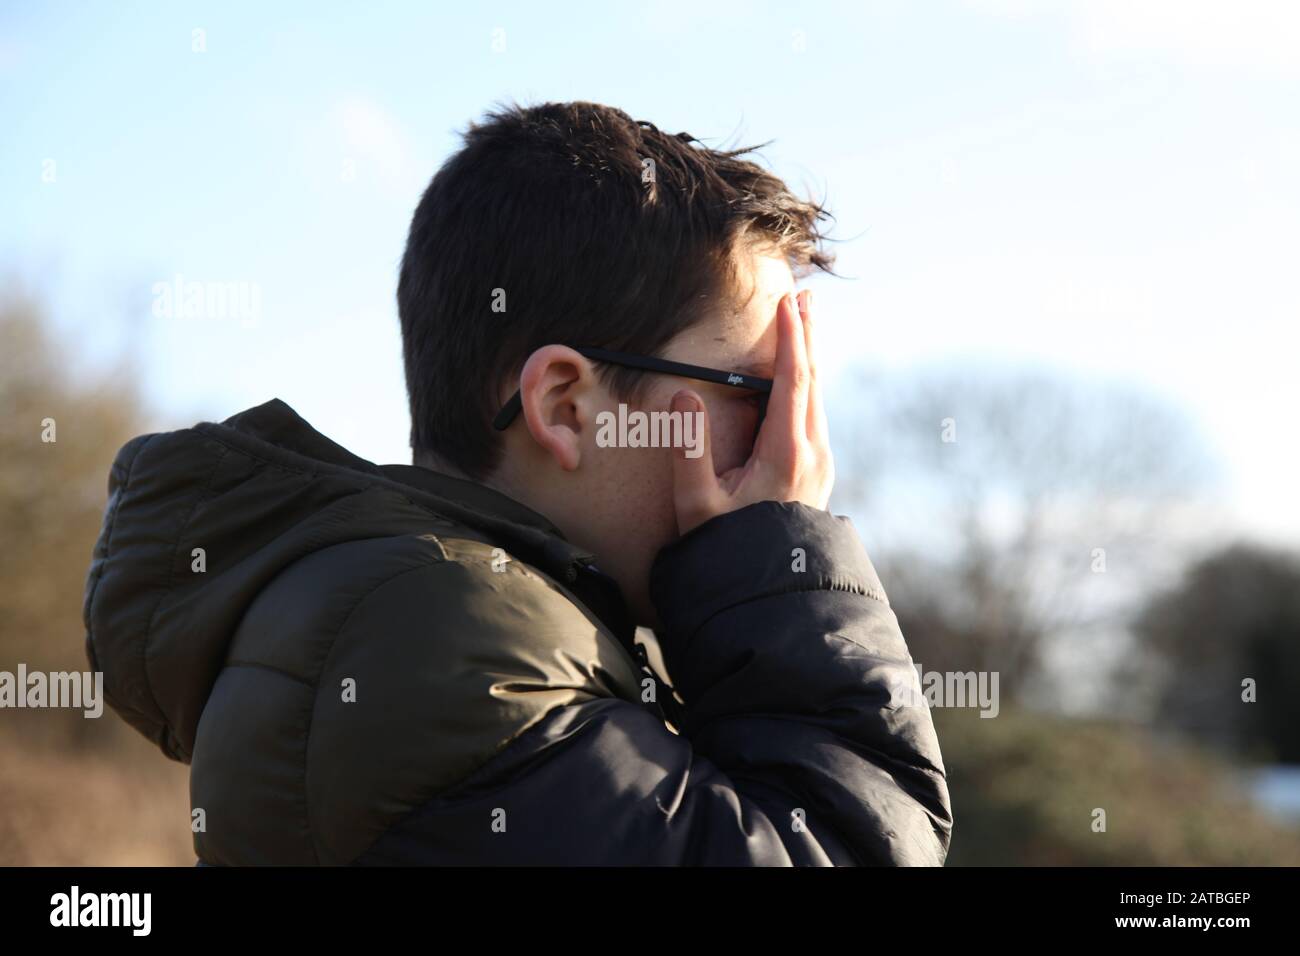 Un jeune garçon de 12 couvre son visage boueux avec ses mains, profil latéral Banque D'Images